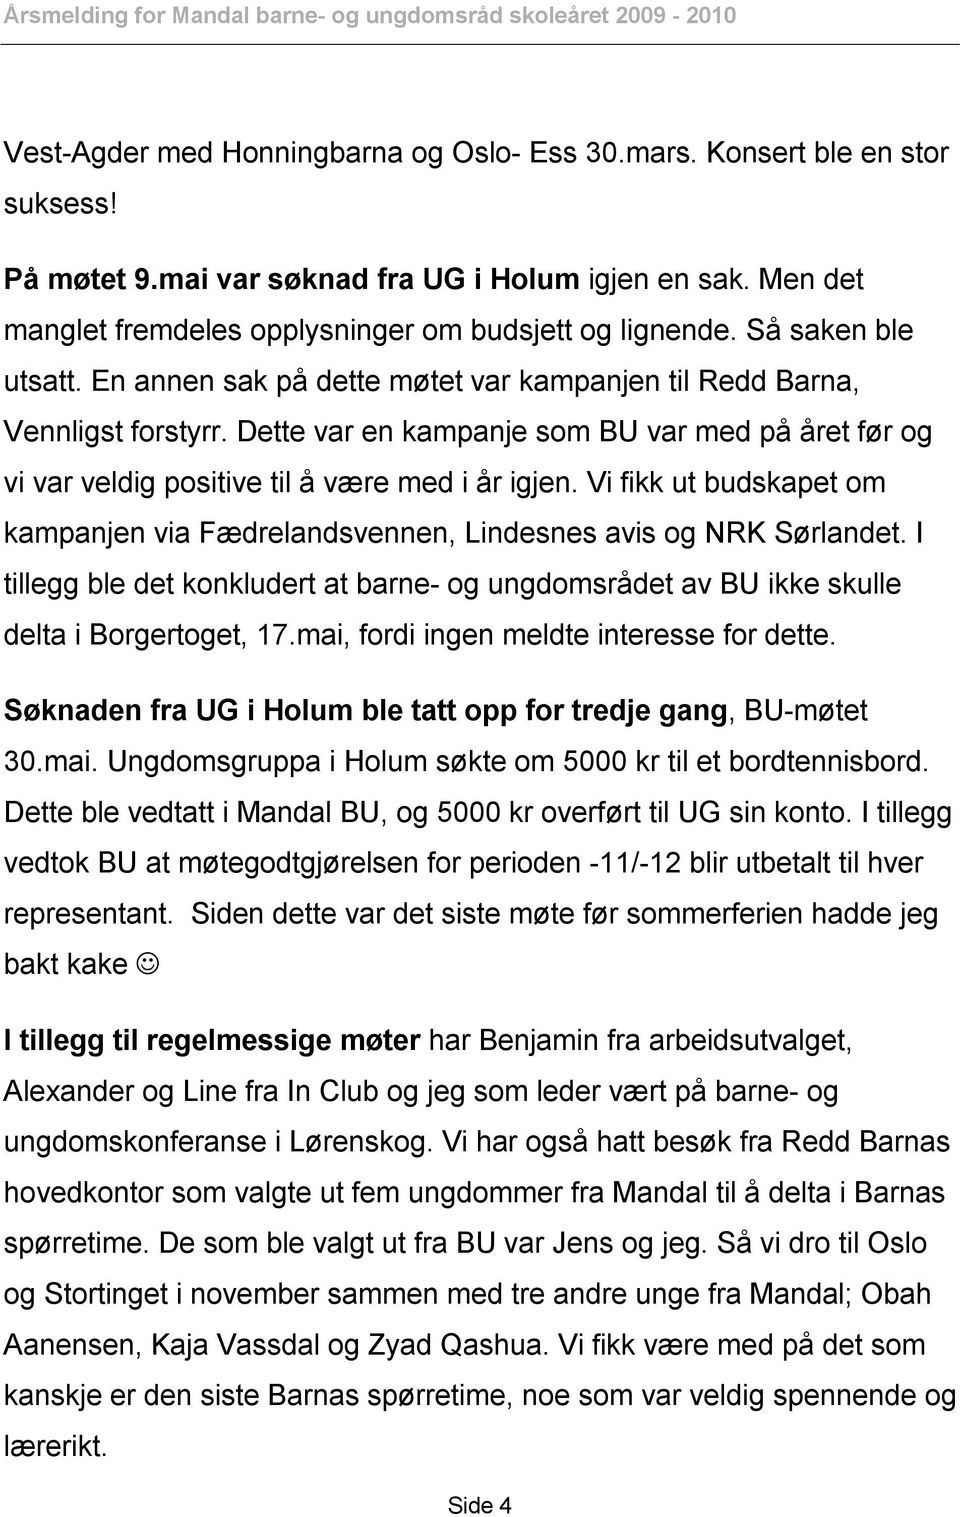 Vi fikk ut budskapet om kampanjen via Fædrelandsvennen, Lindesnes avis og NRK Sørlandet. I tillegg ble det konkludert at barne- og ungdomsrådet av BU ikke skulle delta i Borgertoget, 17.